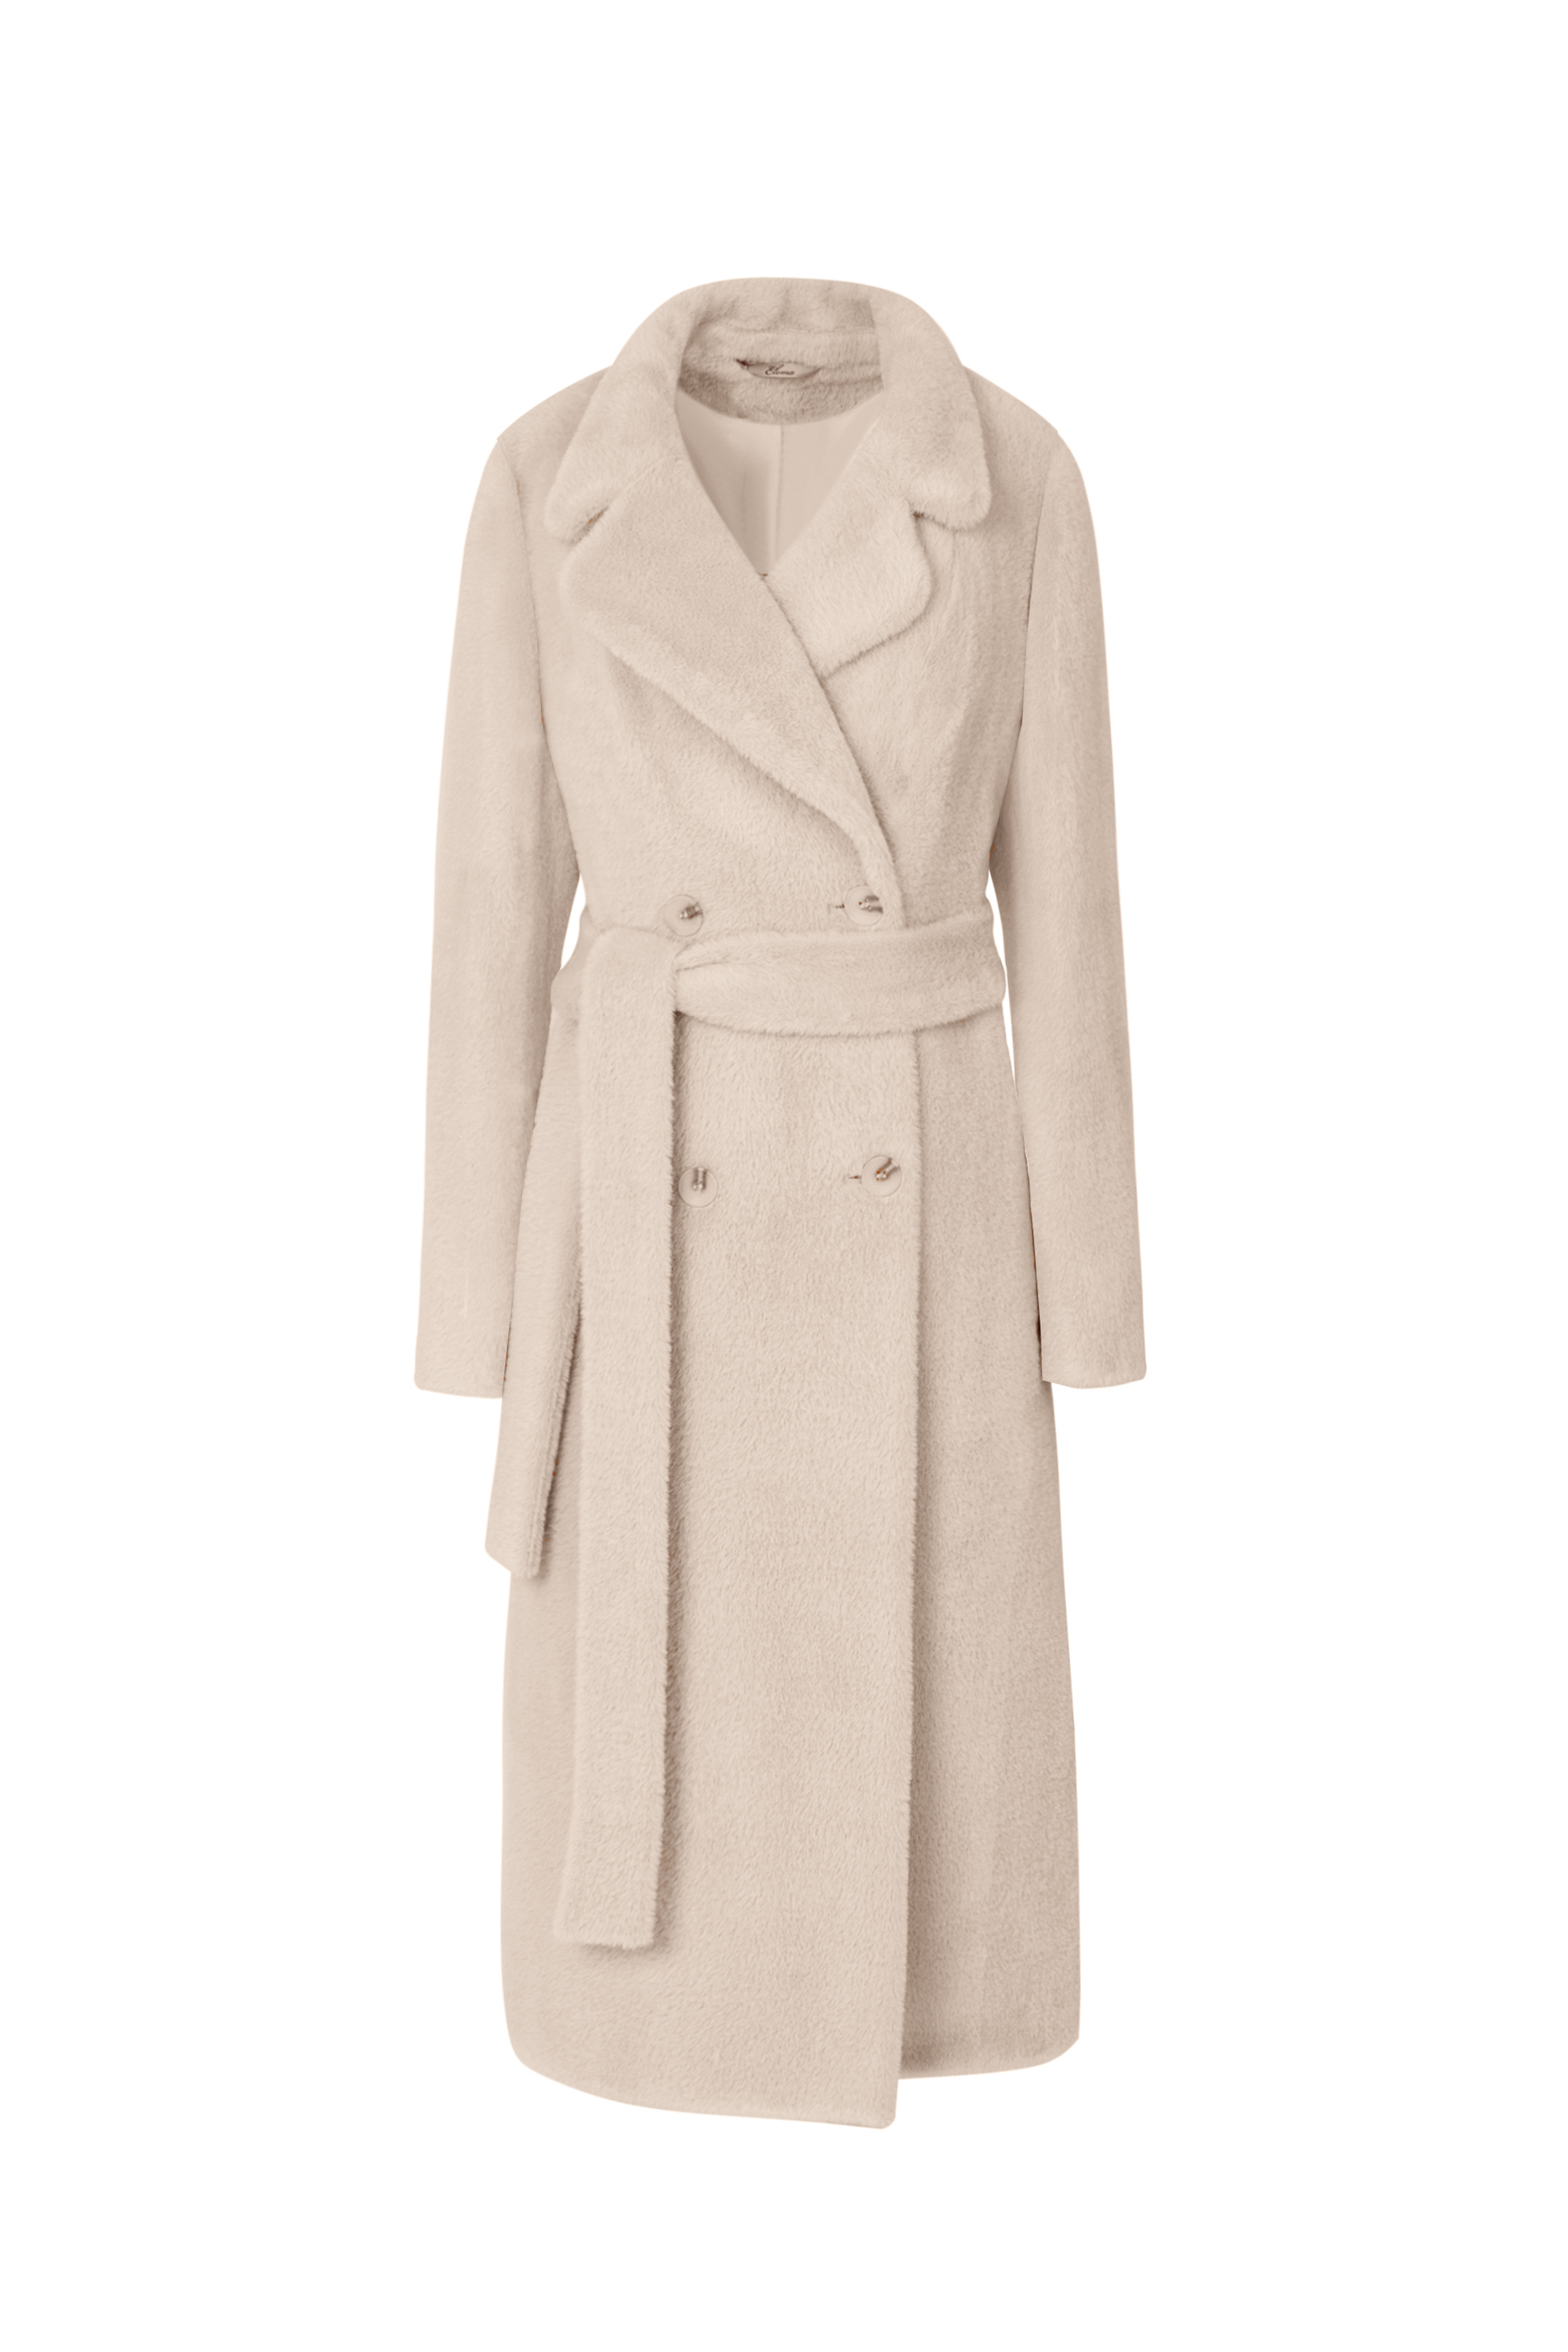 Пальто женское демисезонное 1-13053-1. Фото 1.